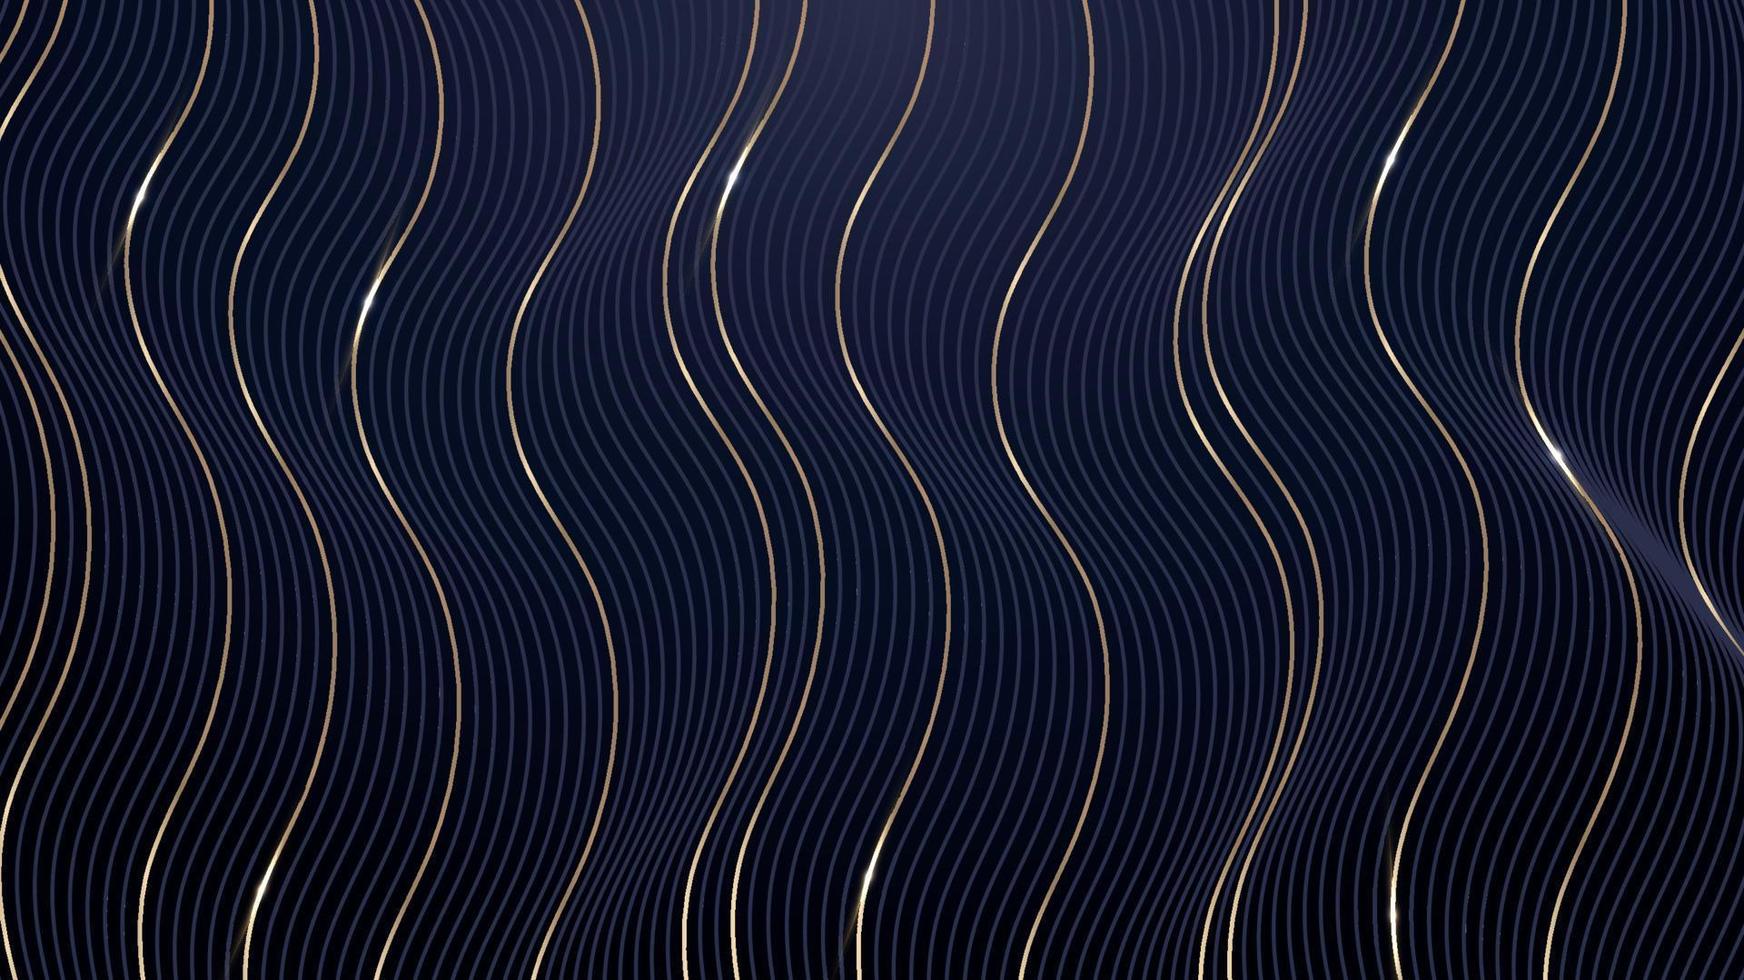 abstrato 3d dinâmico ondulado azul e padrão de efeito de linhas verticais douradas no estilo de luxo de fundo azul escuro vetor